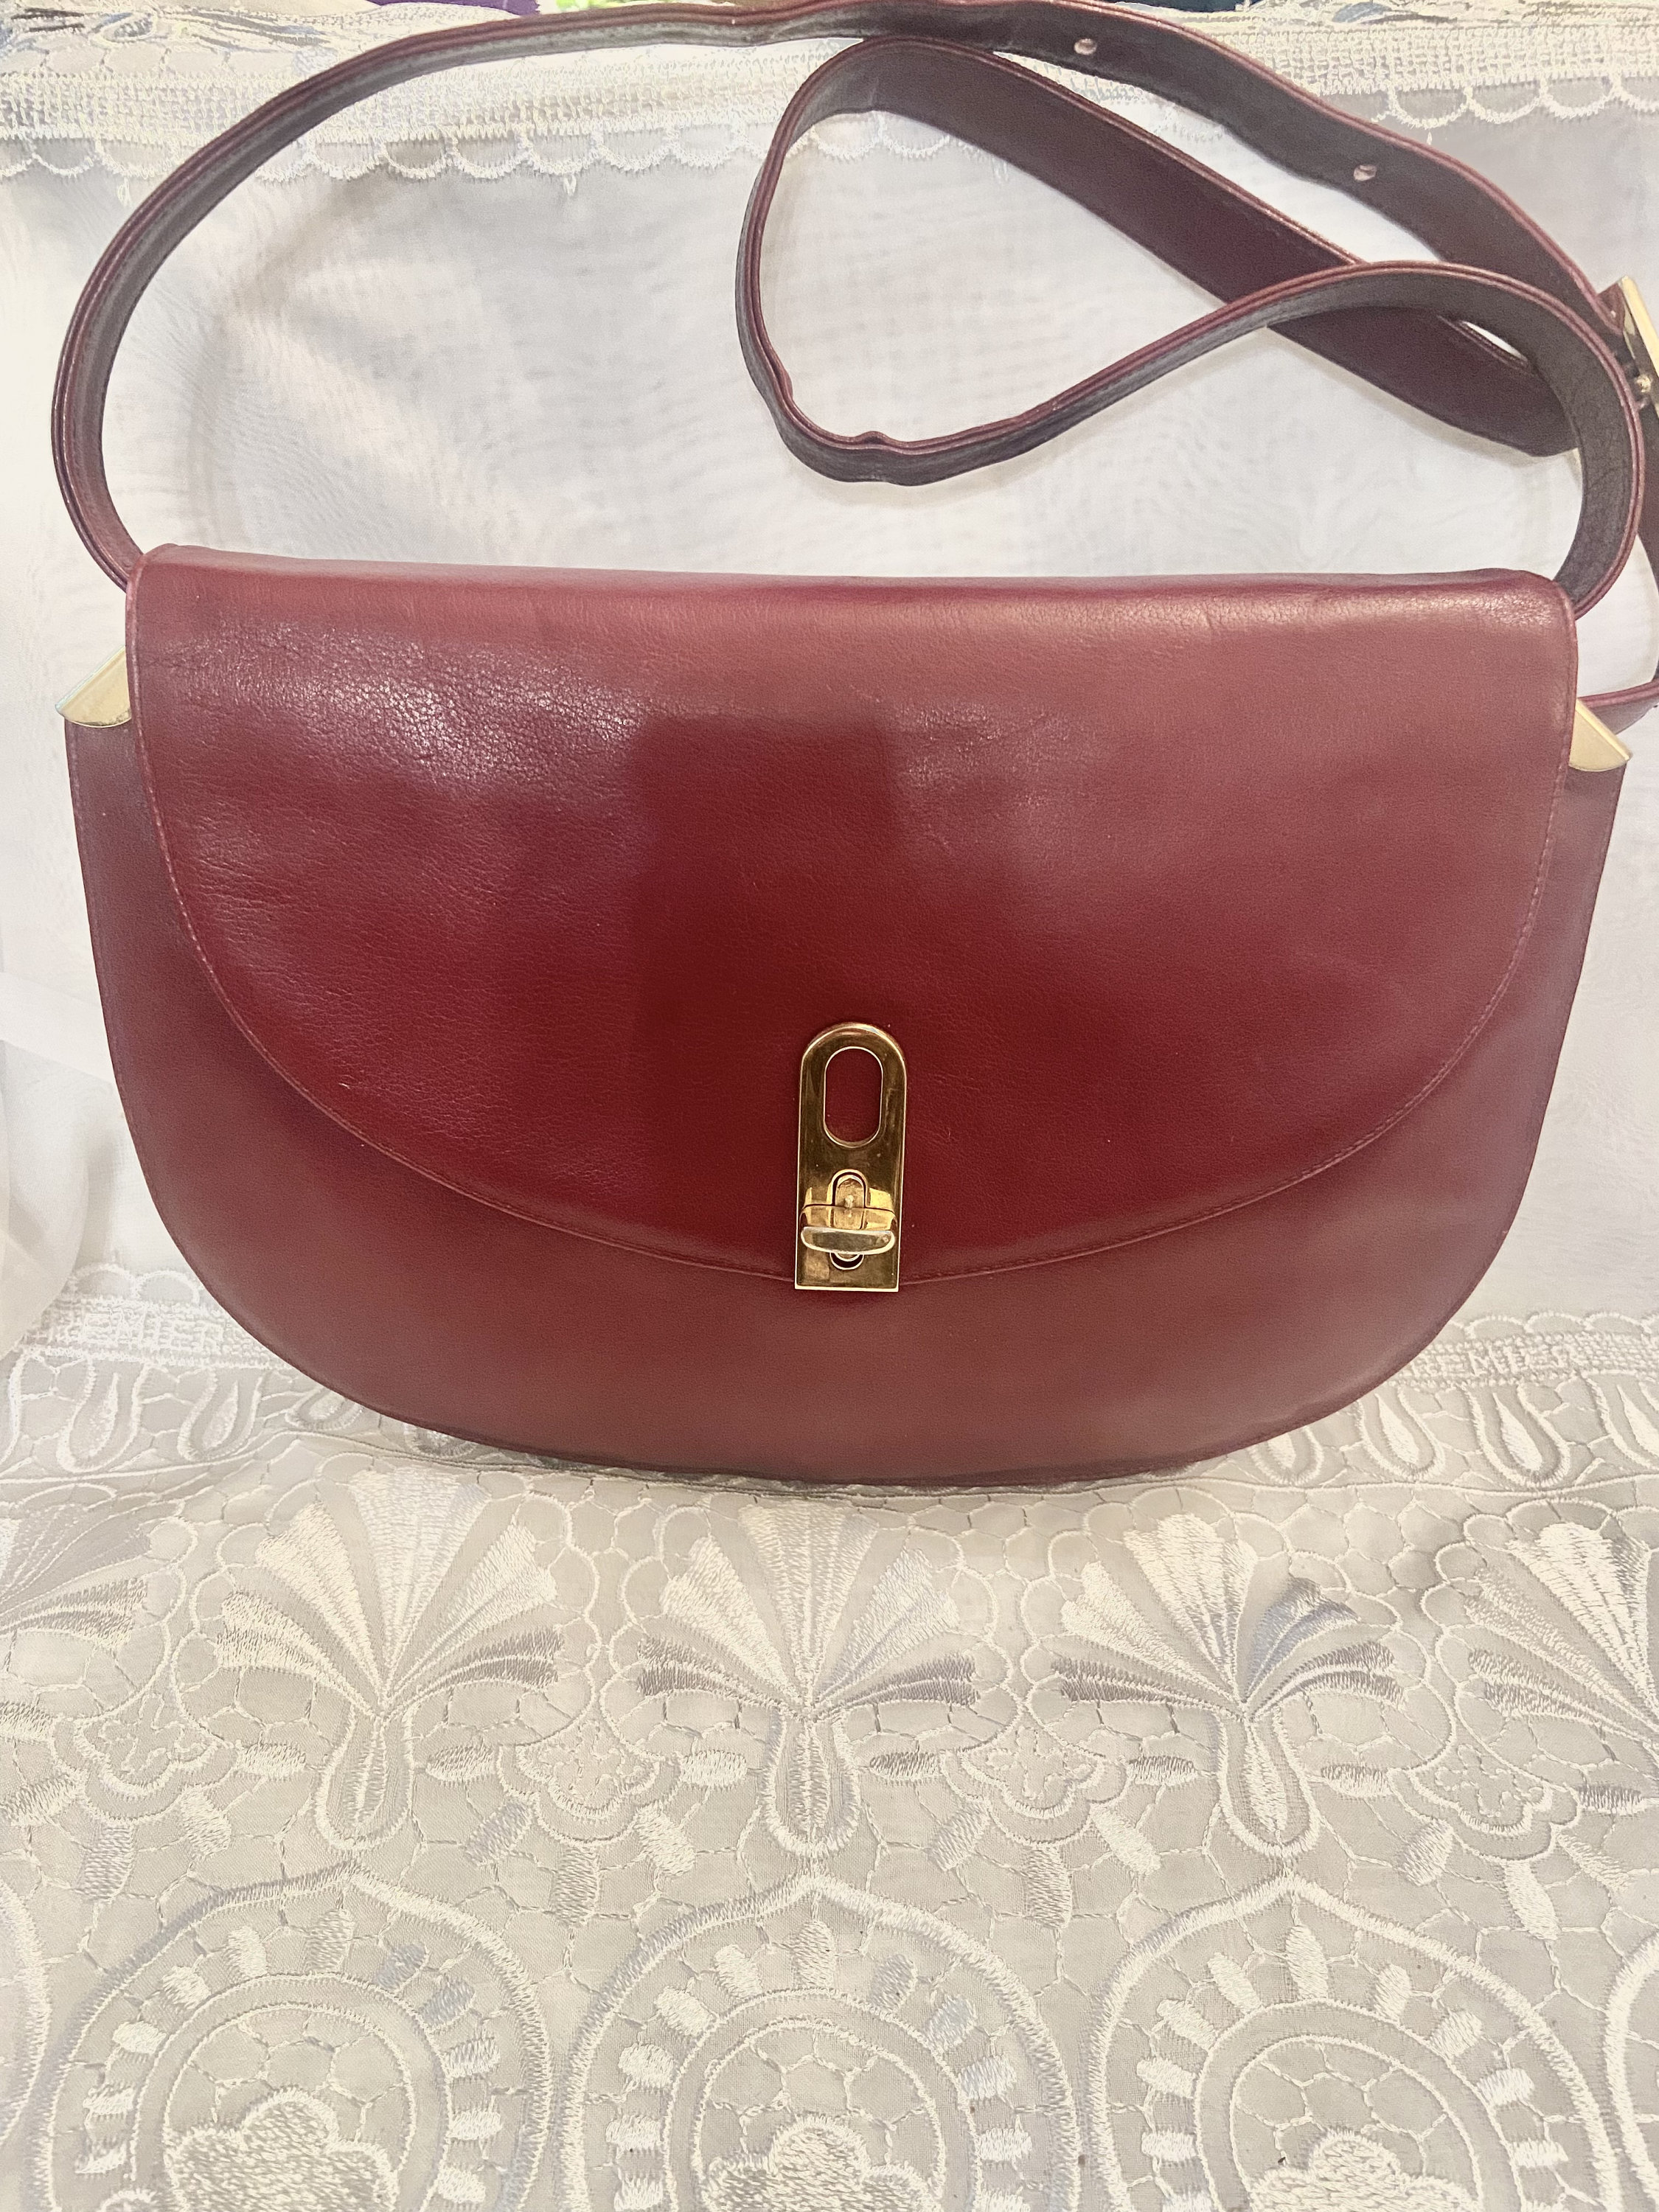 Vintage Leather Burgundy Bag Shoulder/crossbody/top Handle 